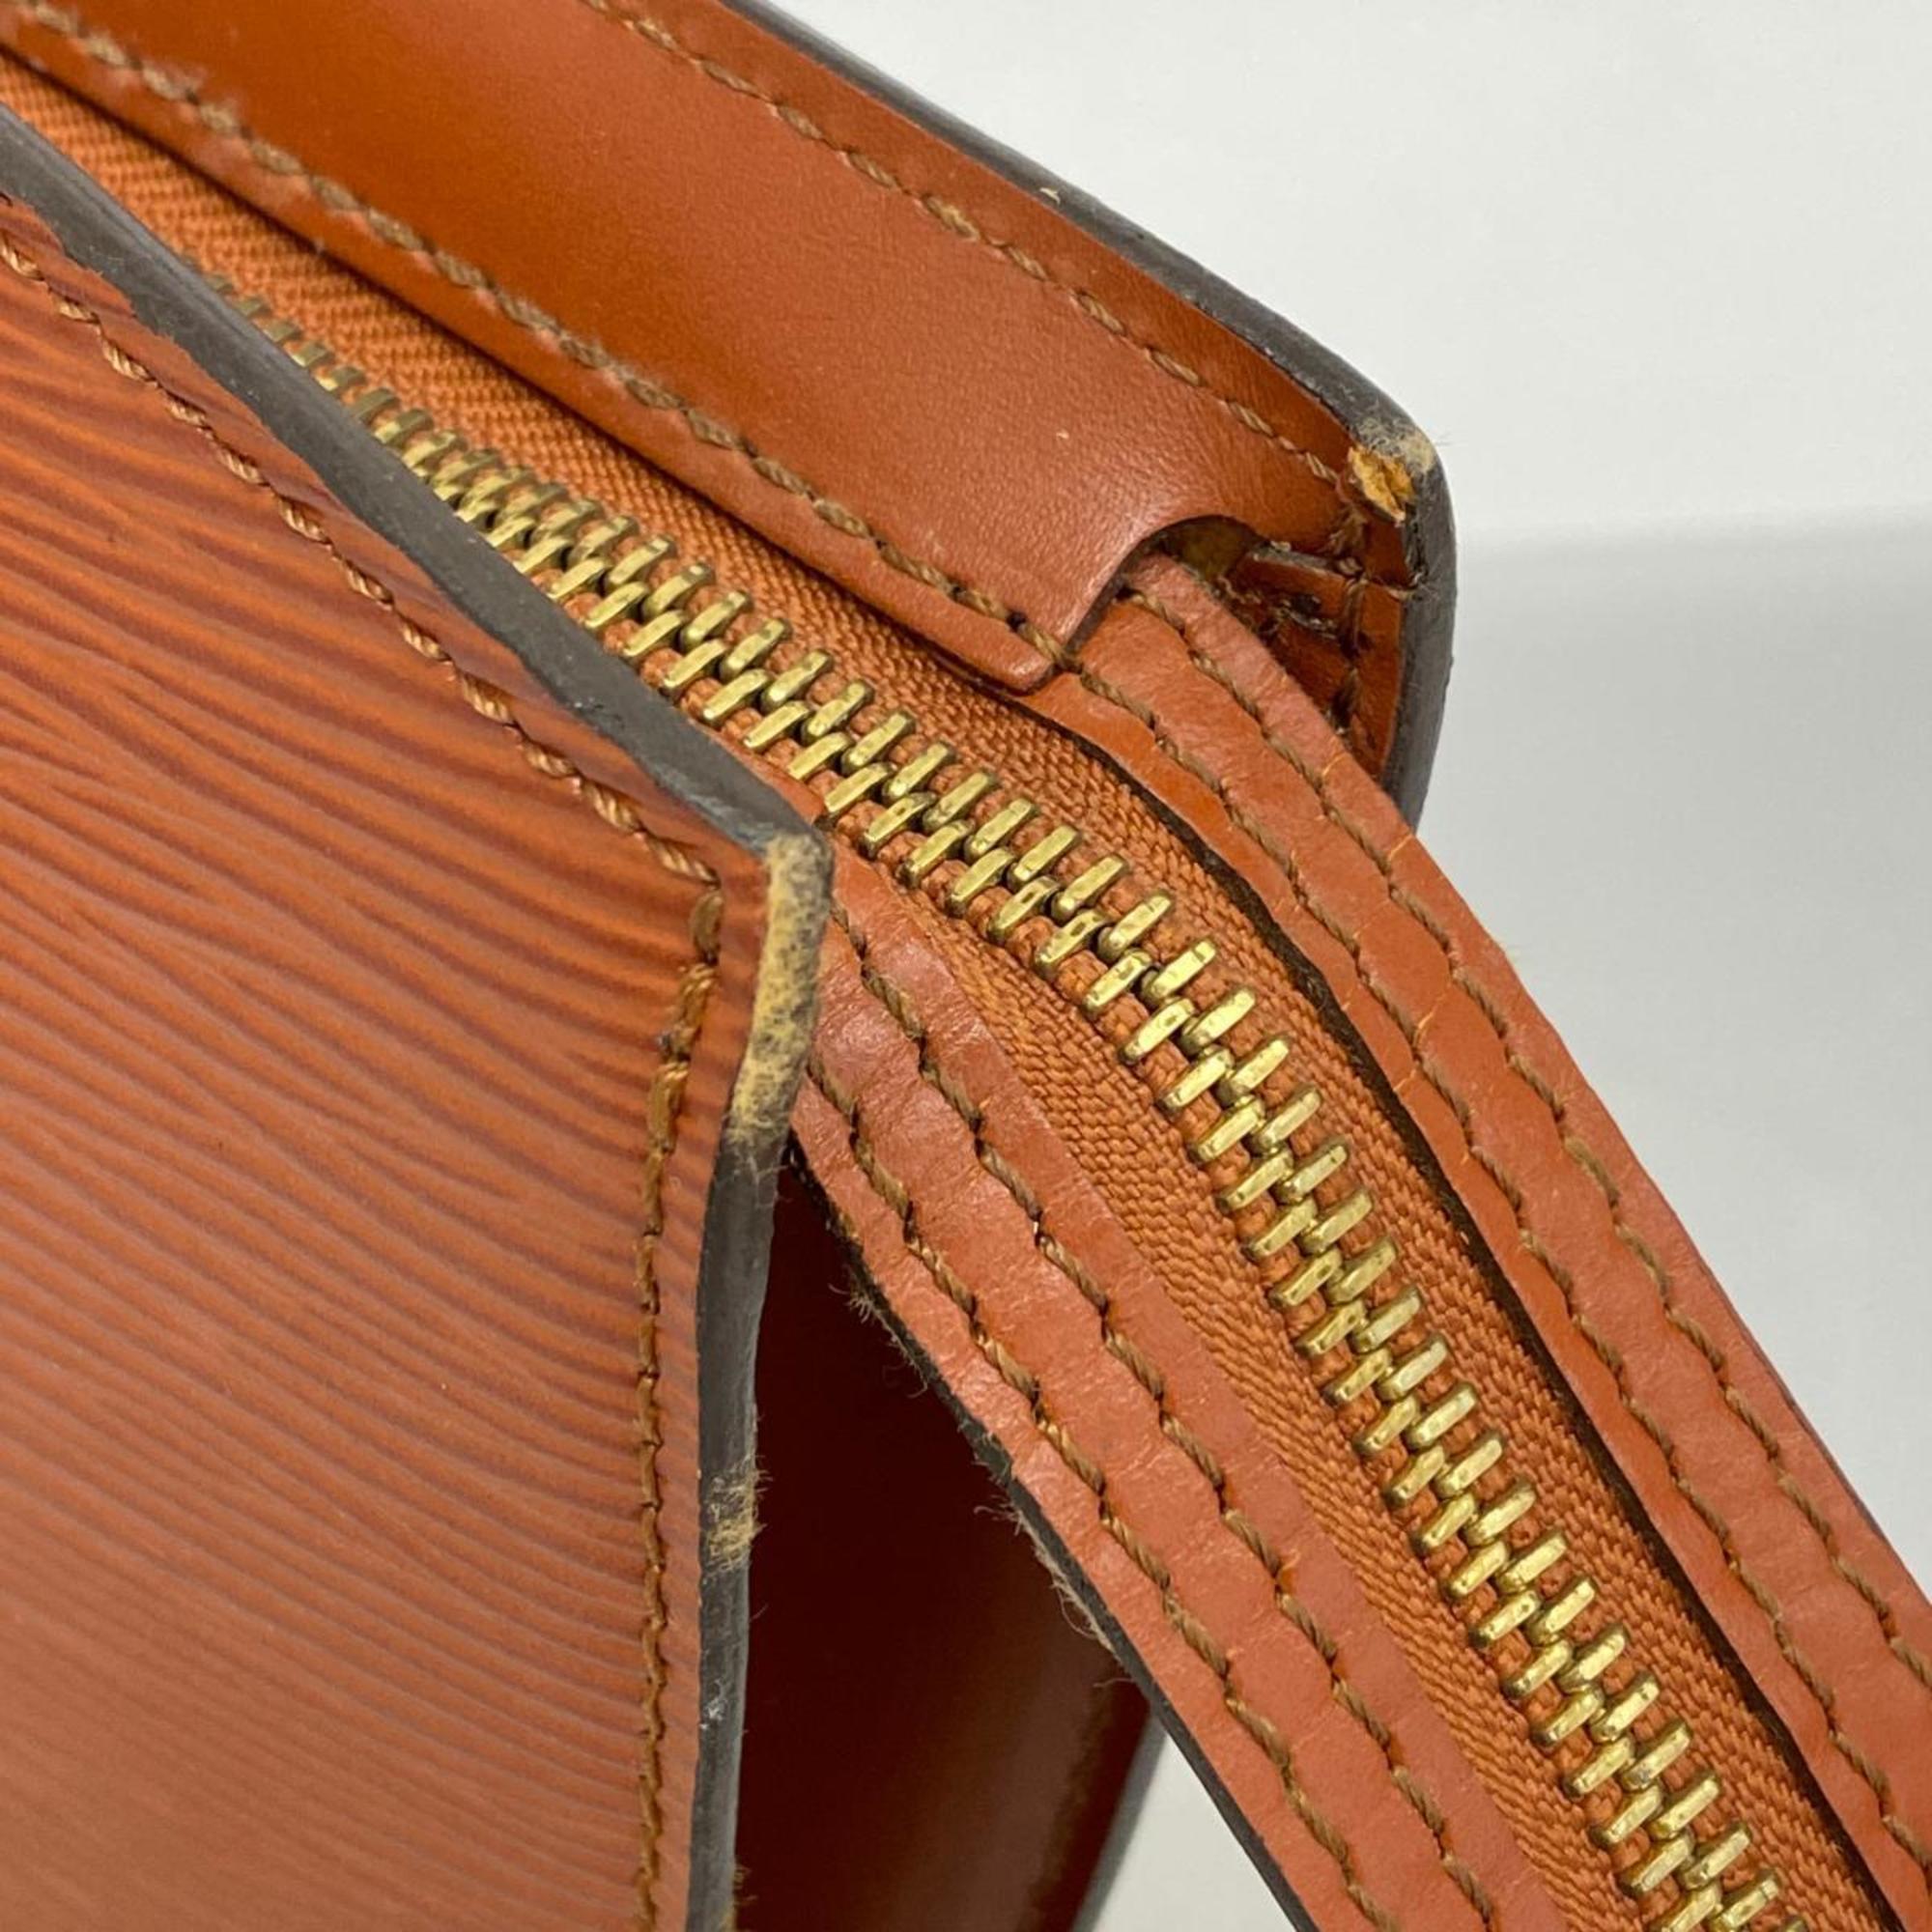 Louis Vuitton Handbag Epi Saint Jacques M52273 Kenya Brown Ladies